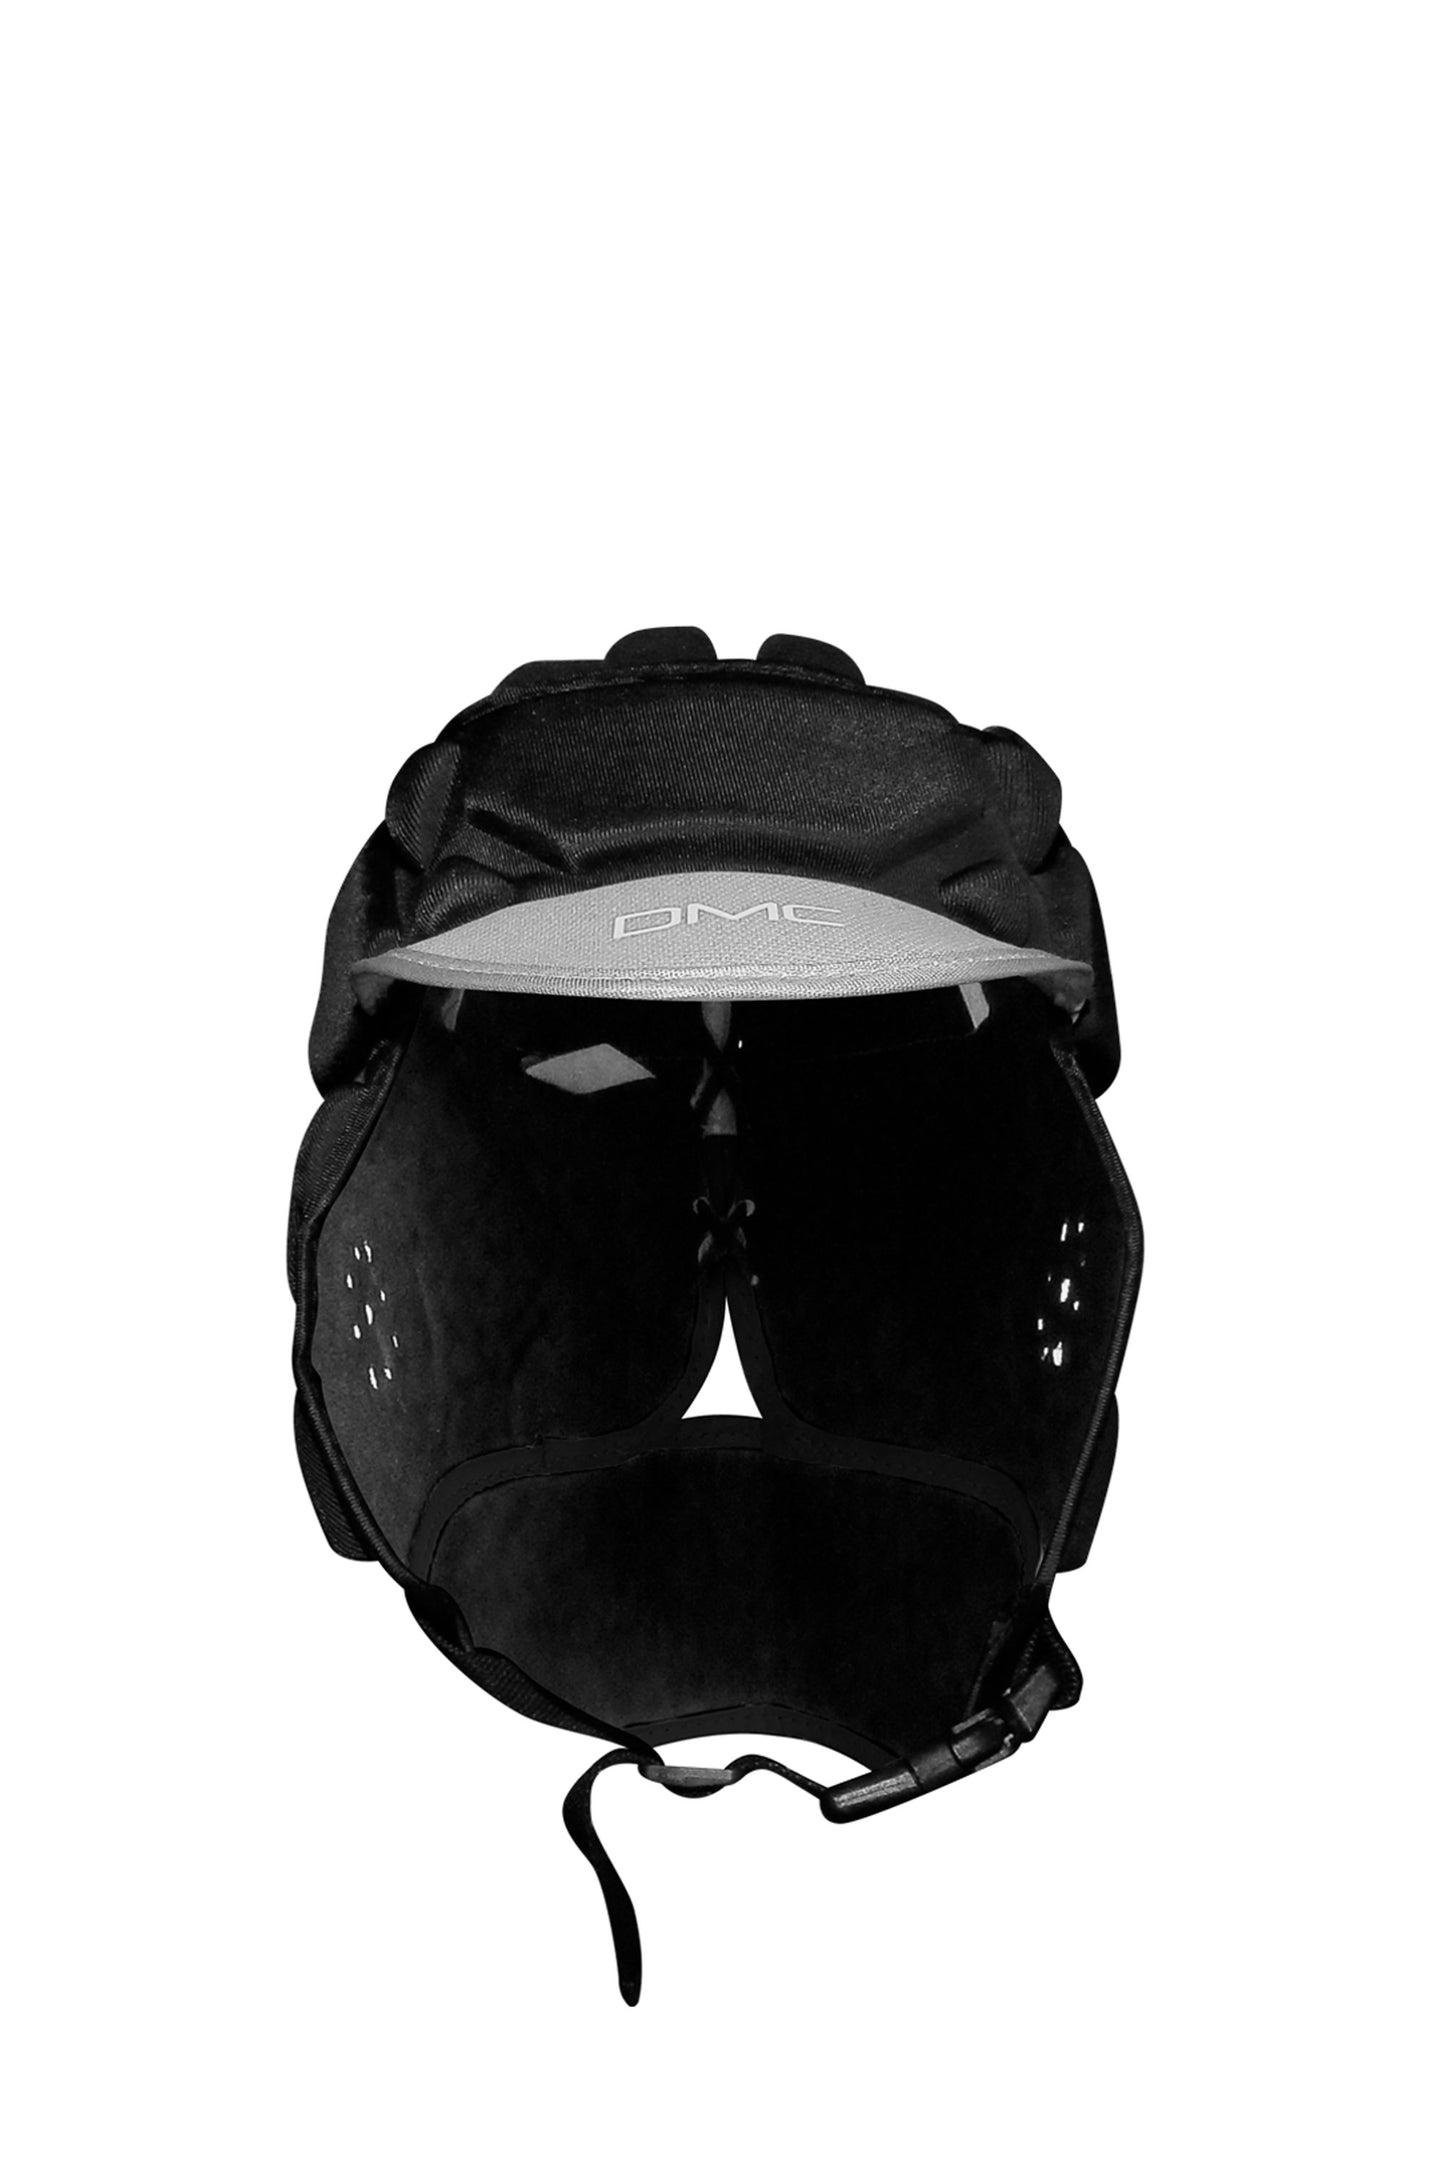 Pukas-Surf-Shop-helmet-dmc-fins-black